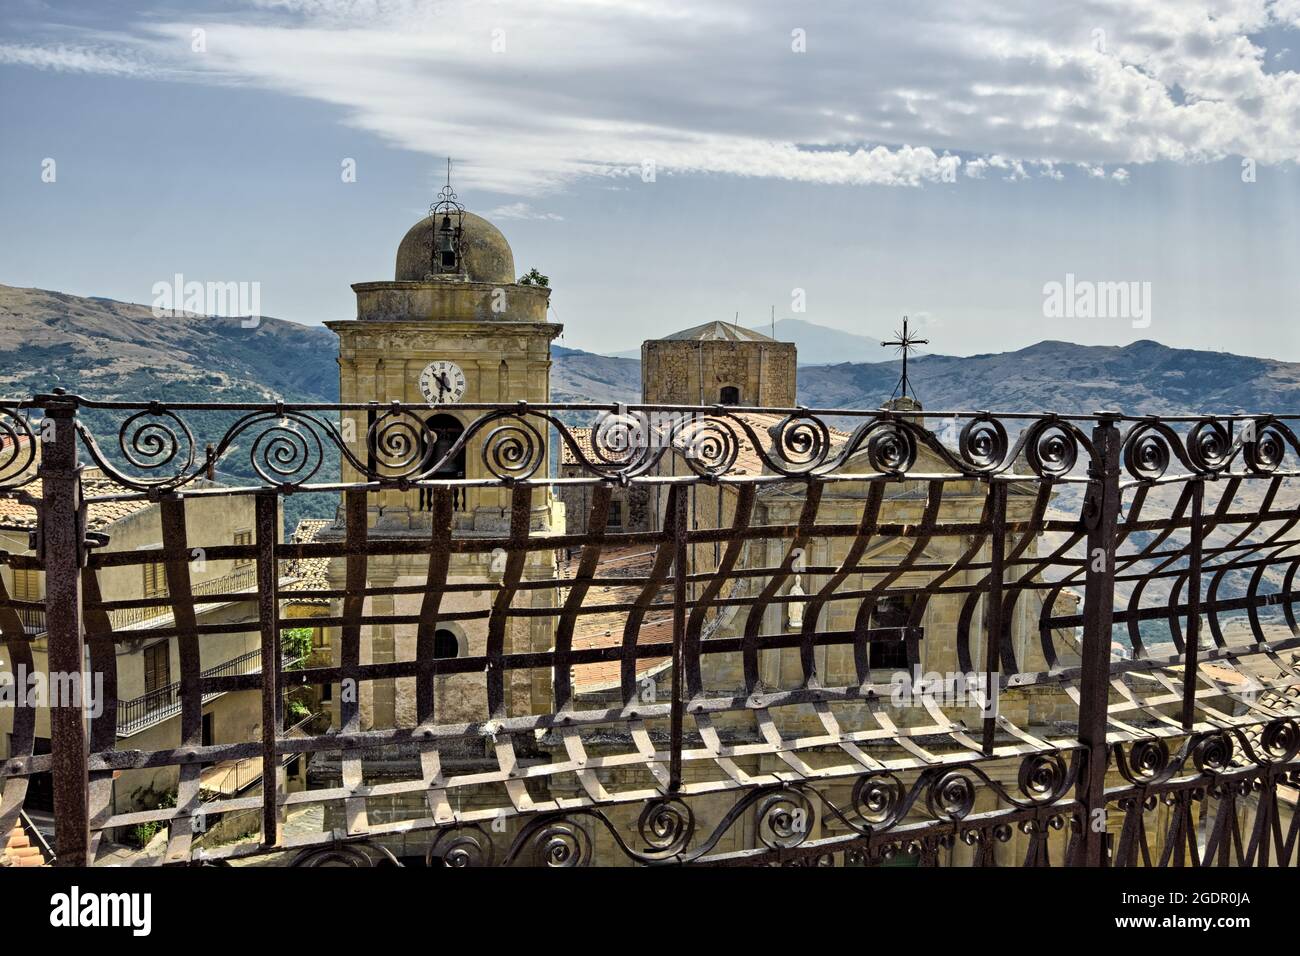 Arte e architettura della Sicilia oltre una vista su una ringhiera in ferro battuto della Chiesa Madre nella città di Capizzi, Messina Foto Stock